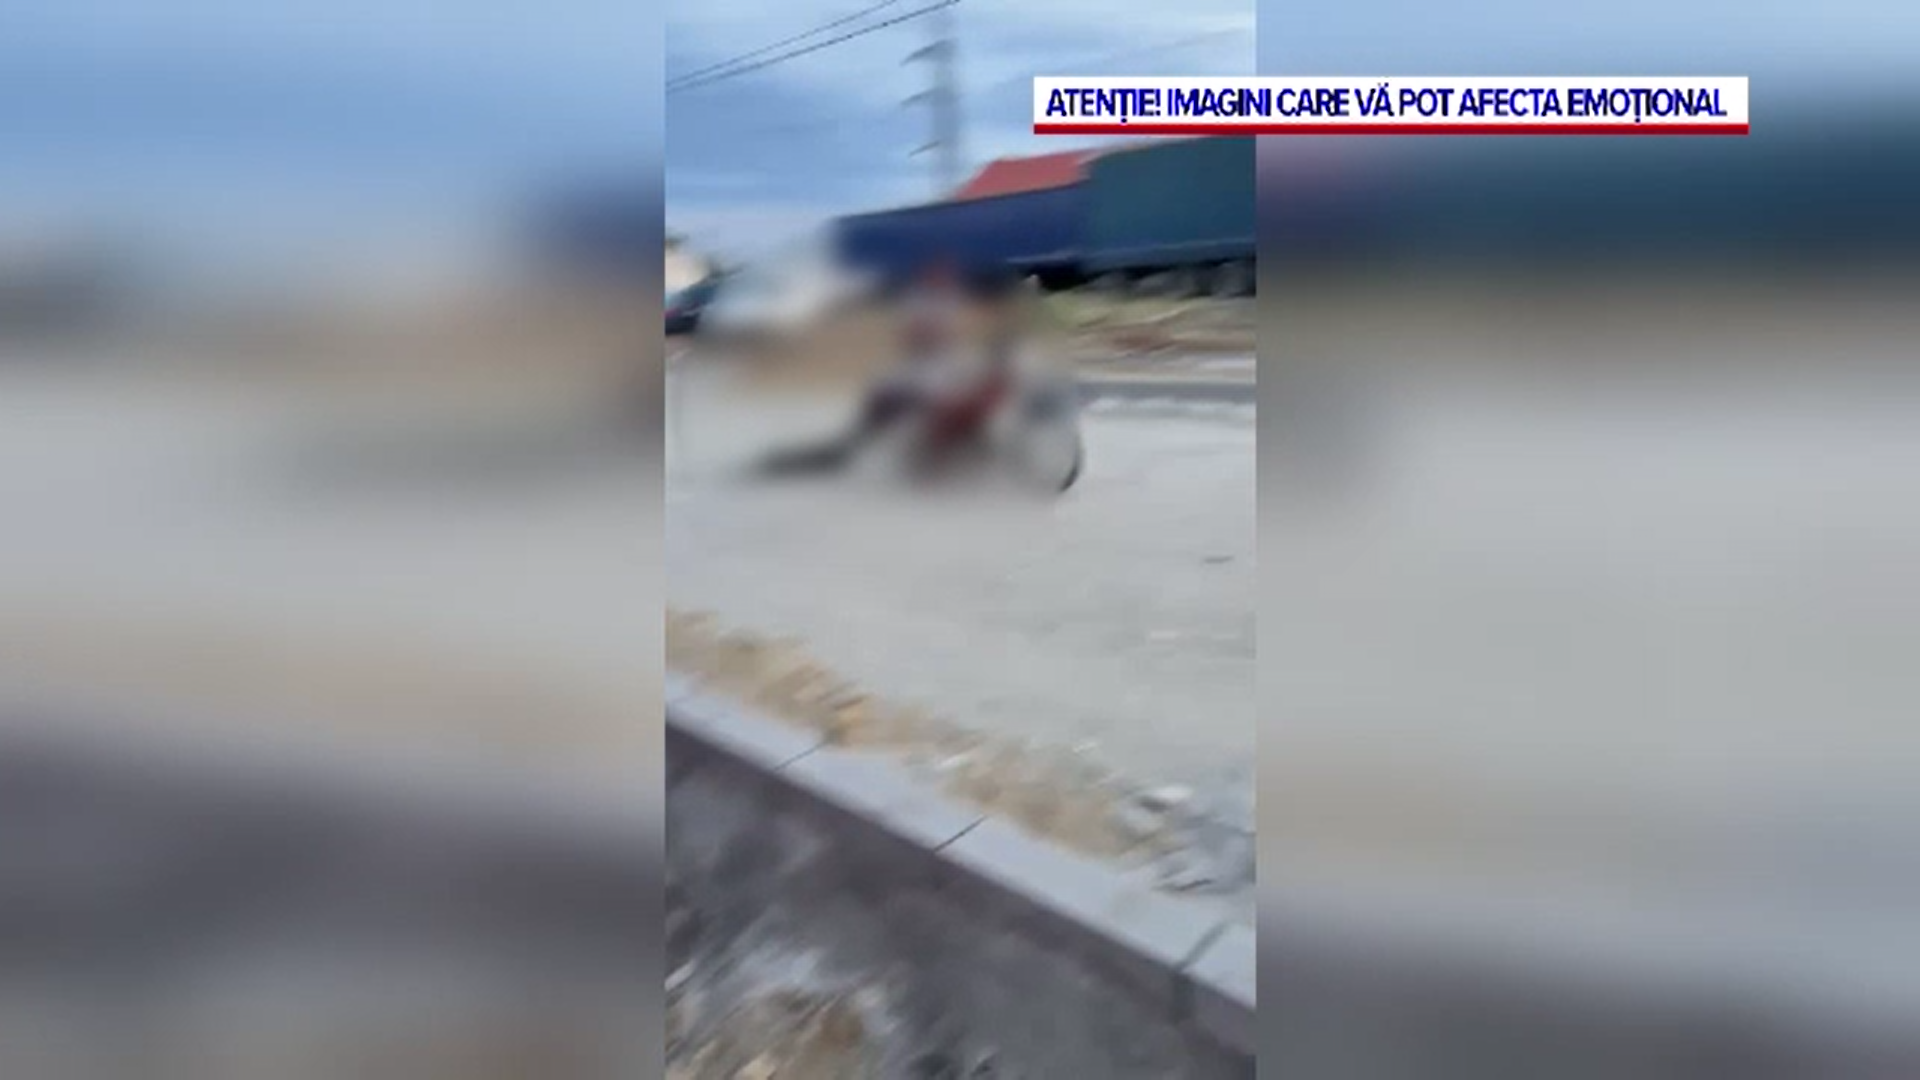 Imagini revoltătoare în Drobeta Turnu Severin. Un individ a legat un căţel de un moped şi l-a târât până a murit